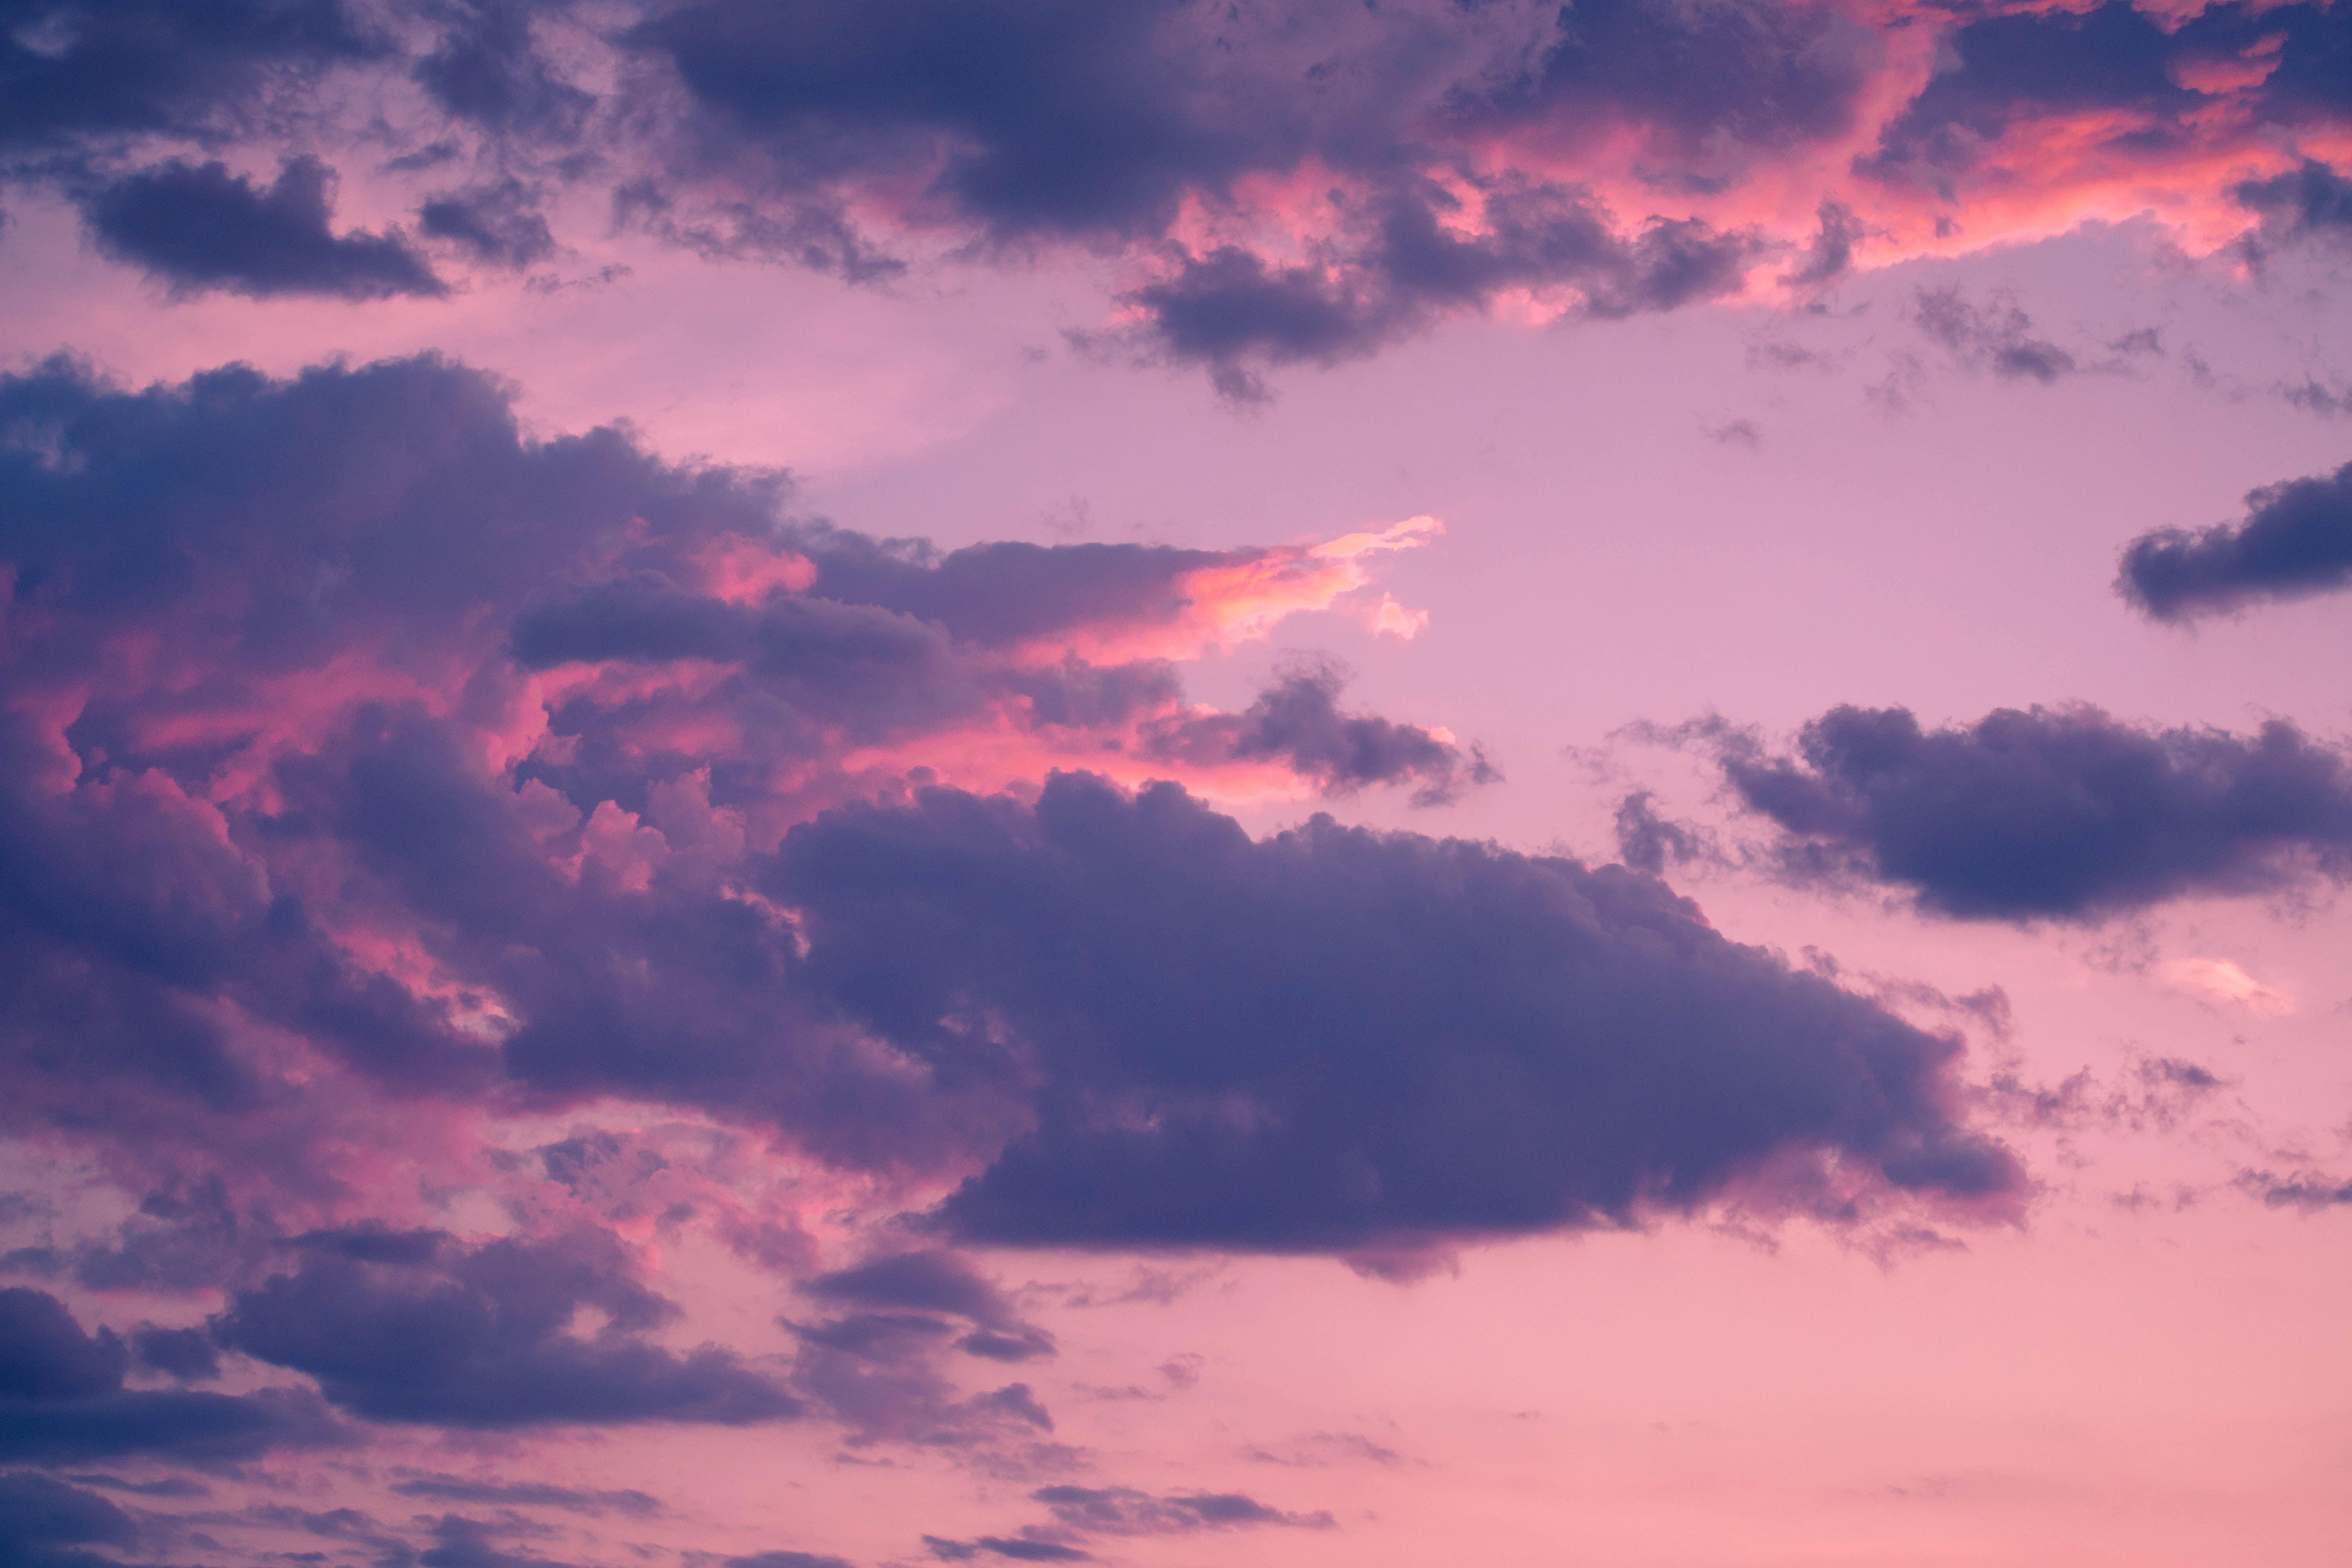 粉紫色天空图片风景素材桌面壁纸_桌面壁纸_mm4000图片大全